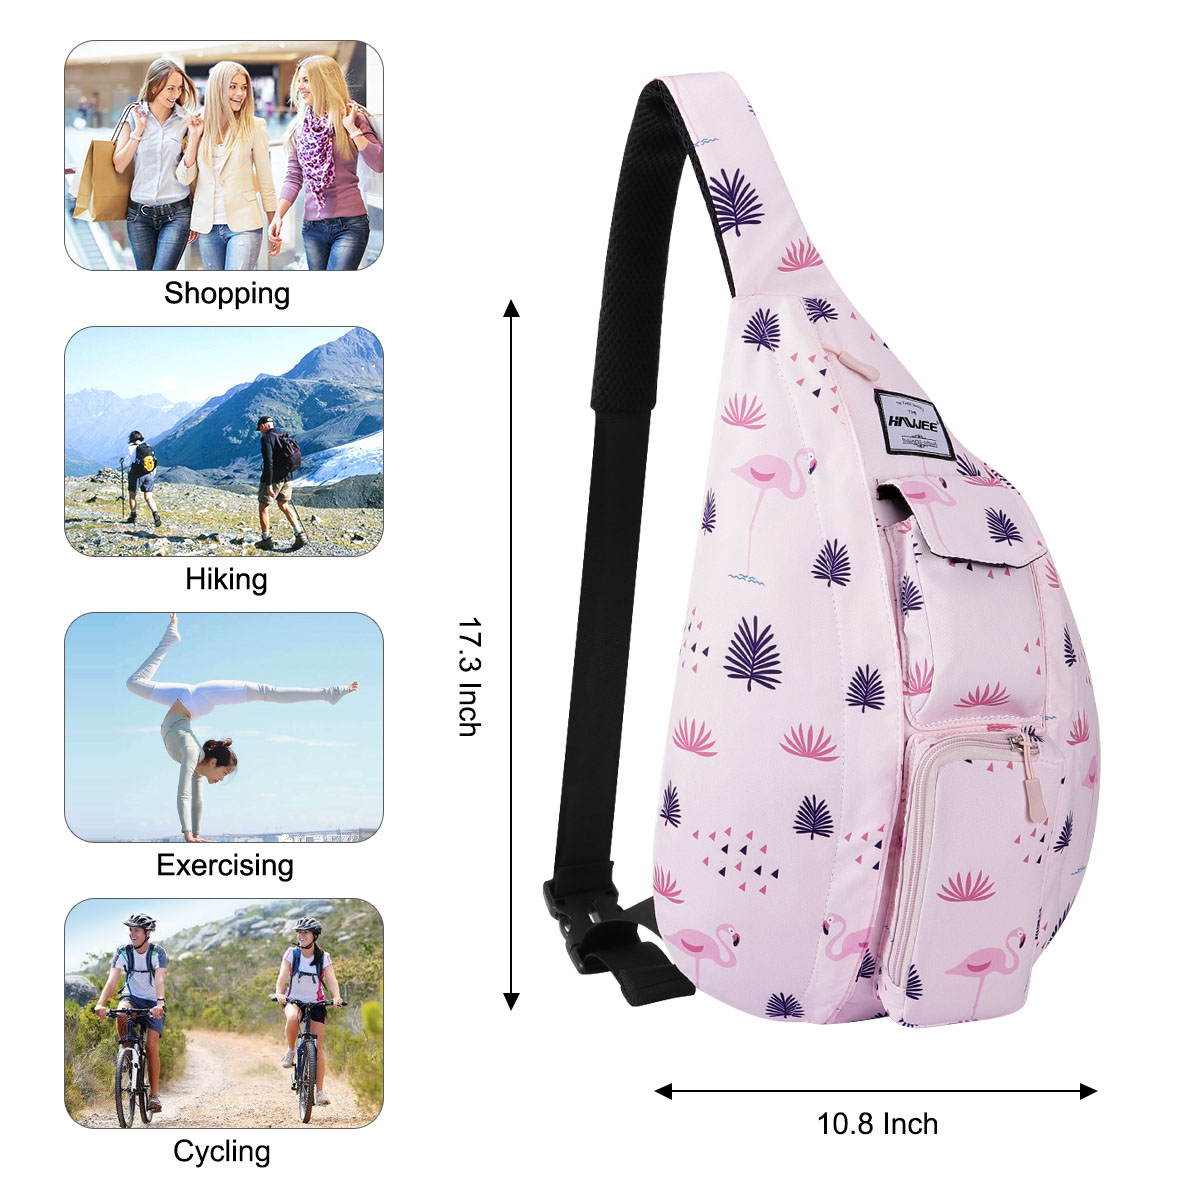 HAWEE Shoulder Sling Bag Hiking Backpack Chest Sling Bag Travel Crossbody Daypack for Women, Flamingo Pink - image 4 of 7